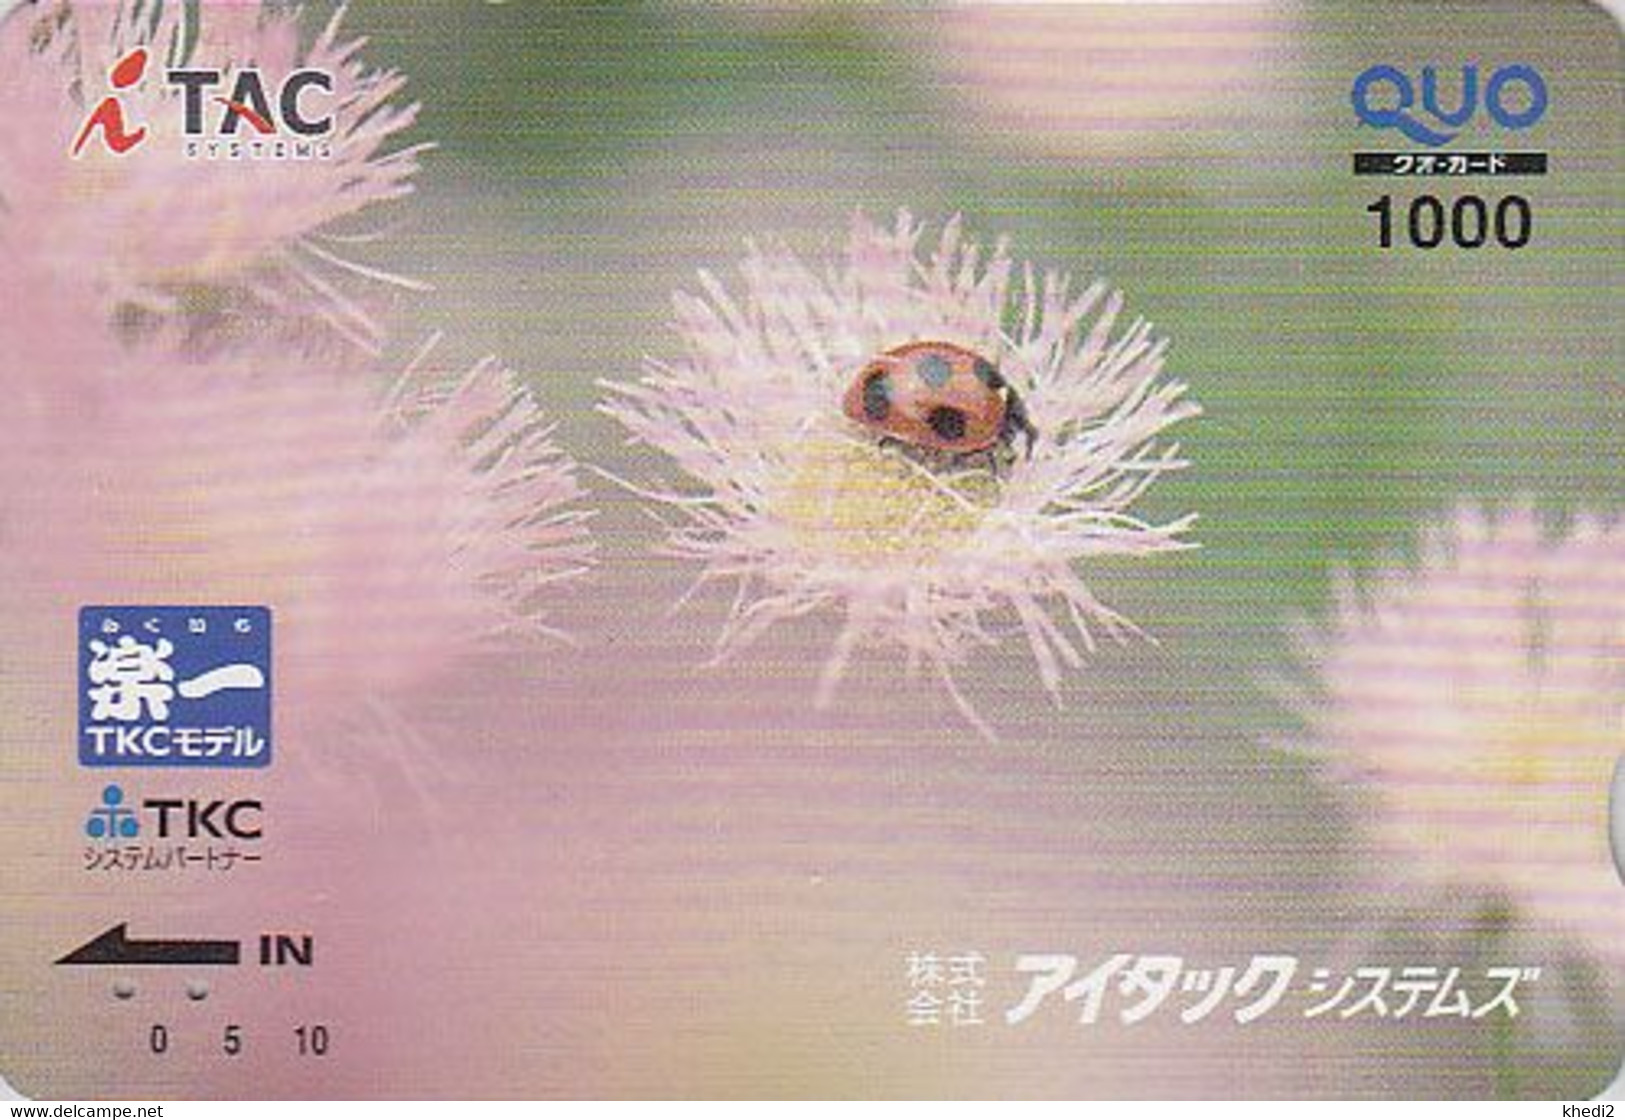 Carte Prépayée JAPON - ANIMAL - Insecte COCCINELLE - LADYBIRD JAPAN Prepaid Quo Card - MARIENKÄFER Karte - Coccinelles